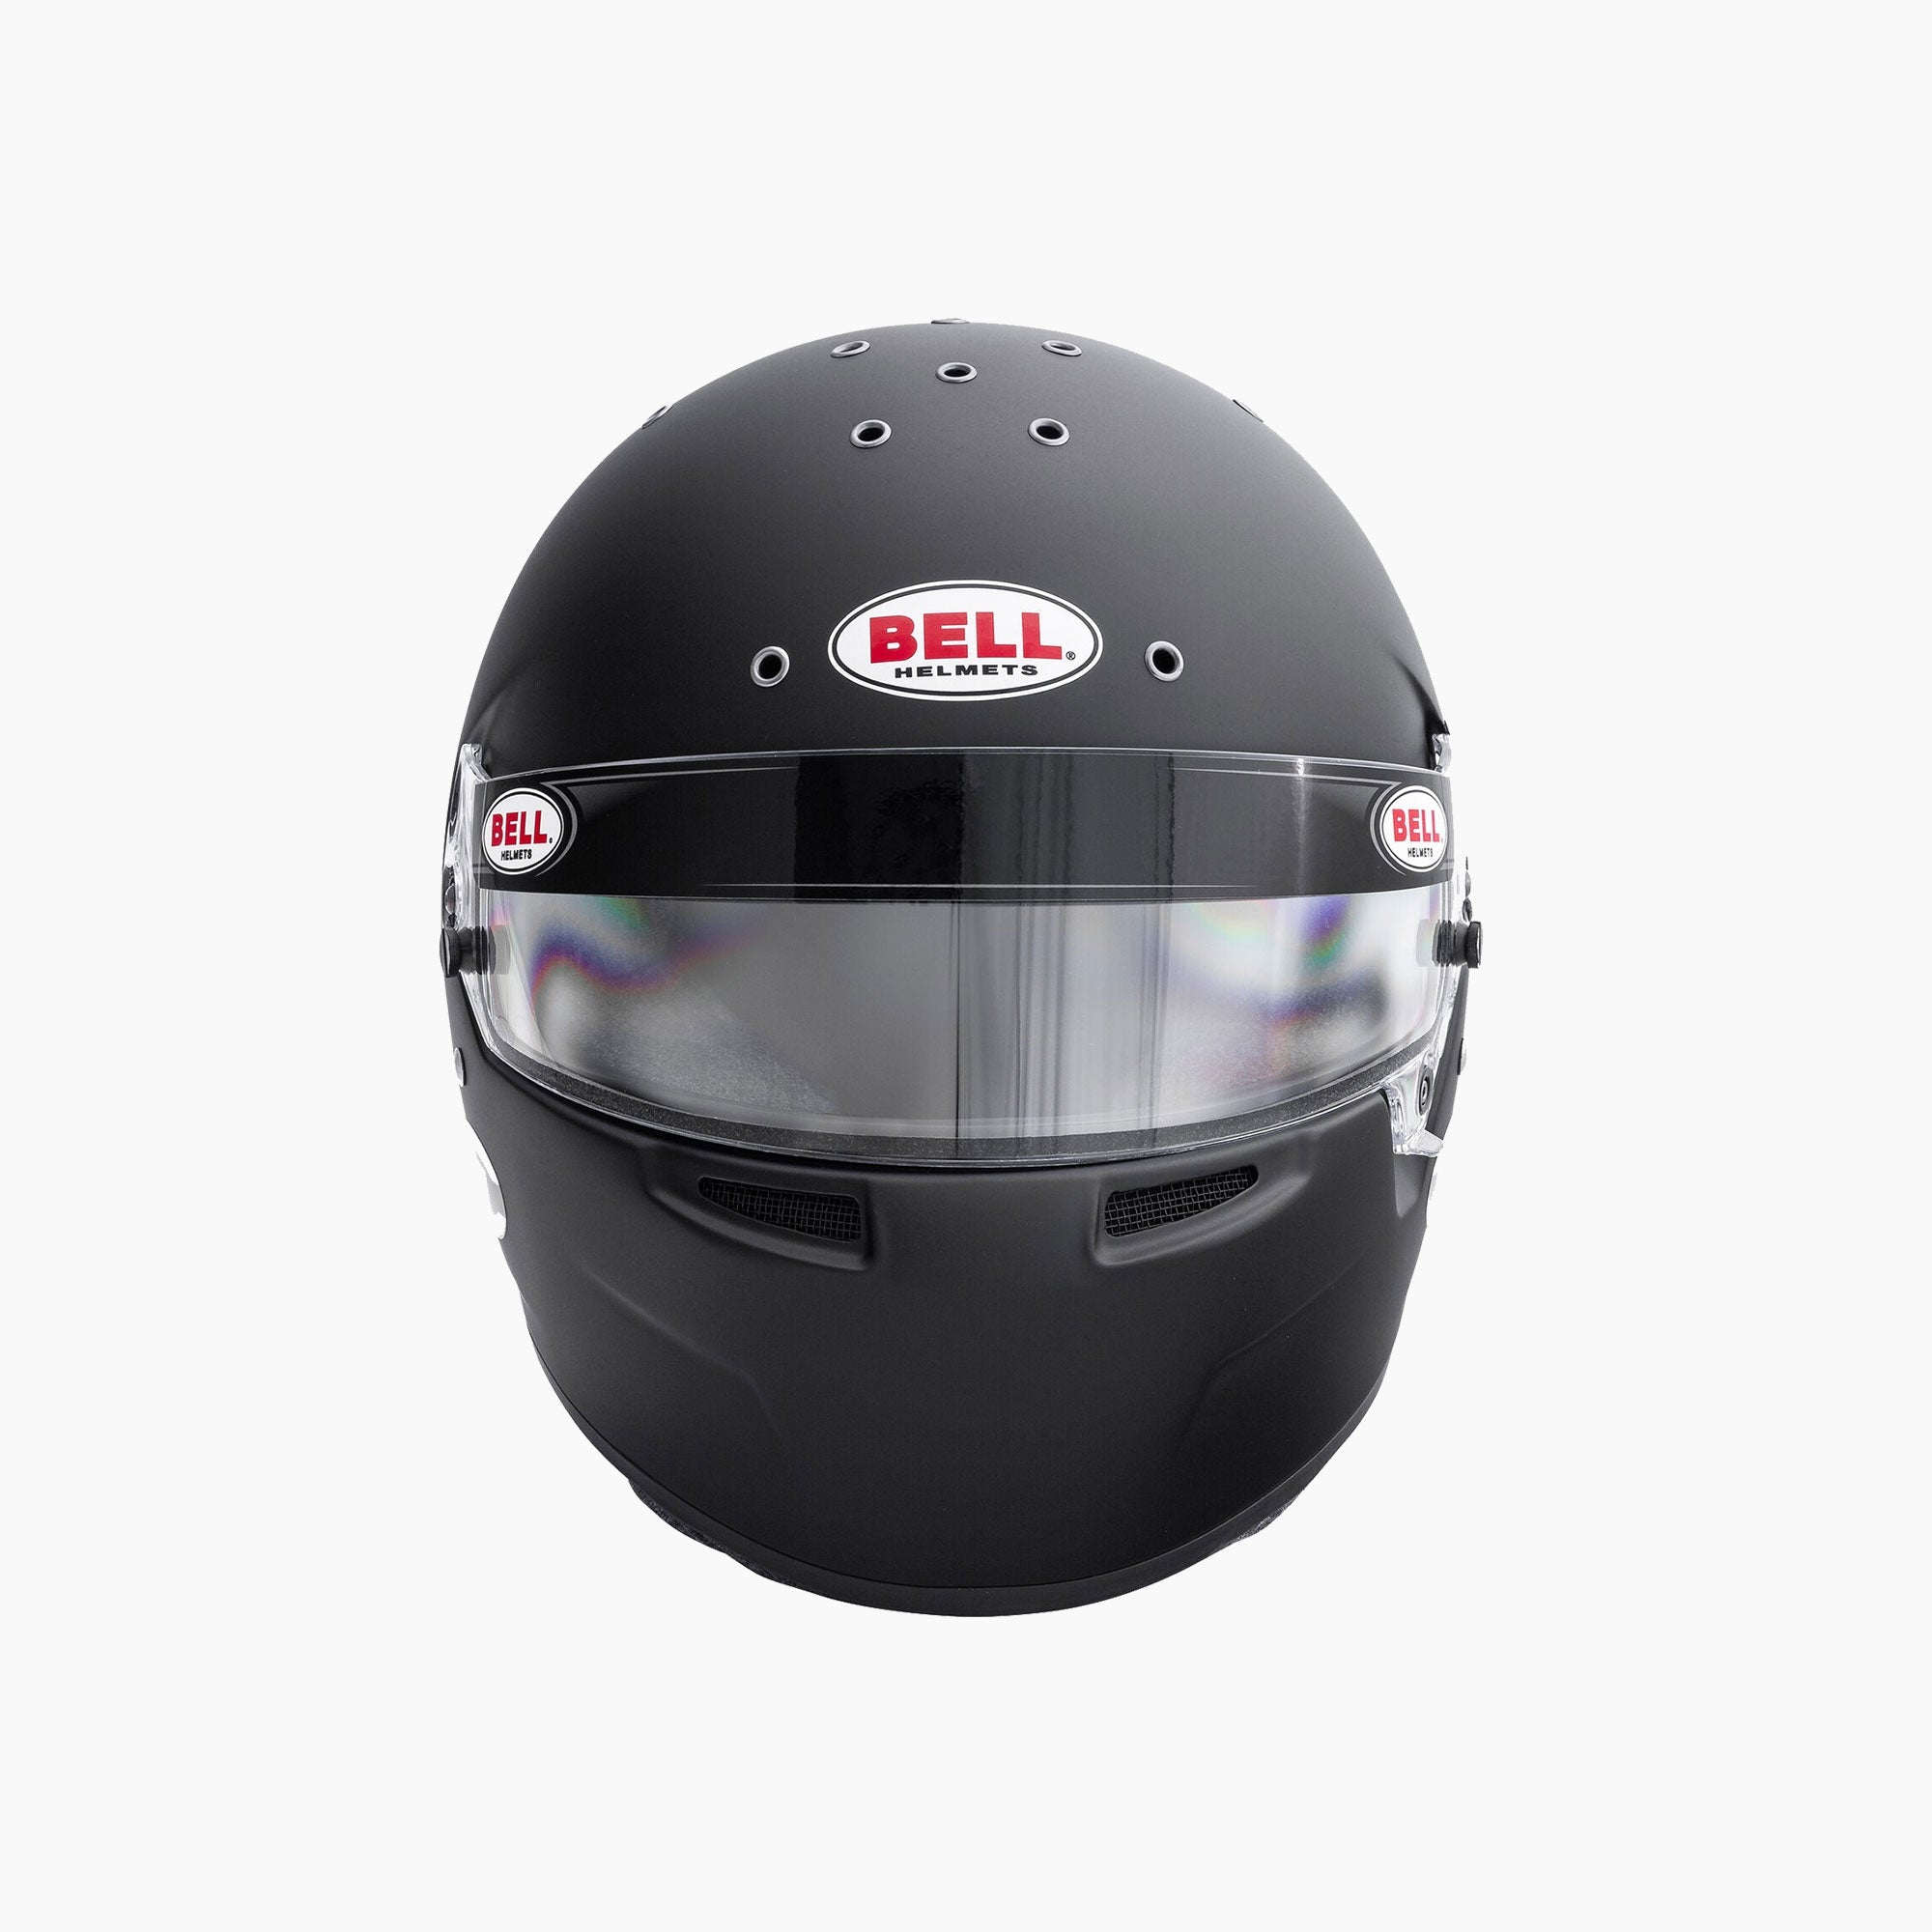 Bell Racing | RS7 Pro (HANS) Racing Helmet-Racing Helmet-Bell Racing-gpx-store